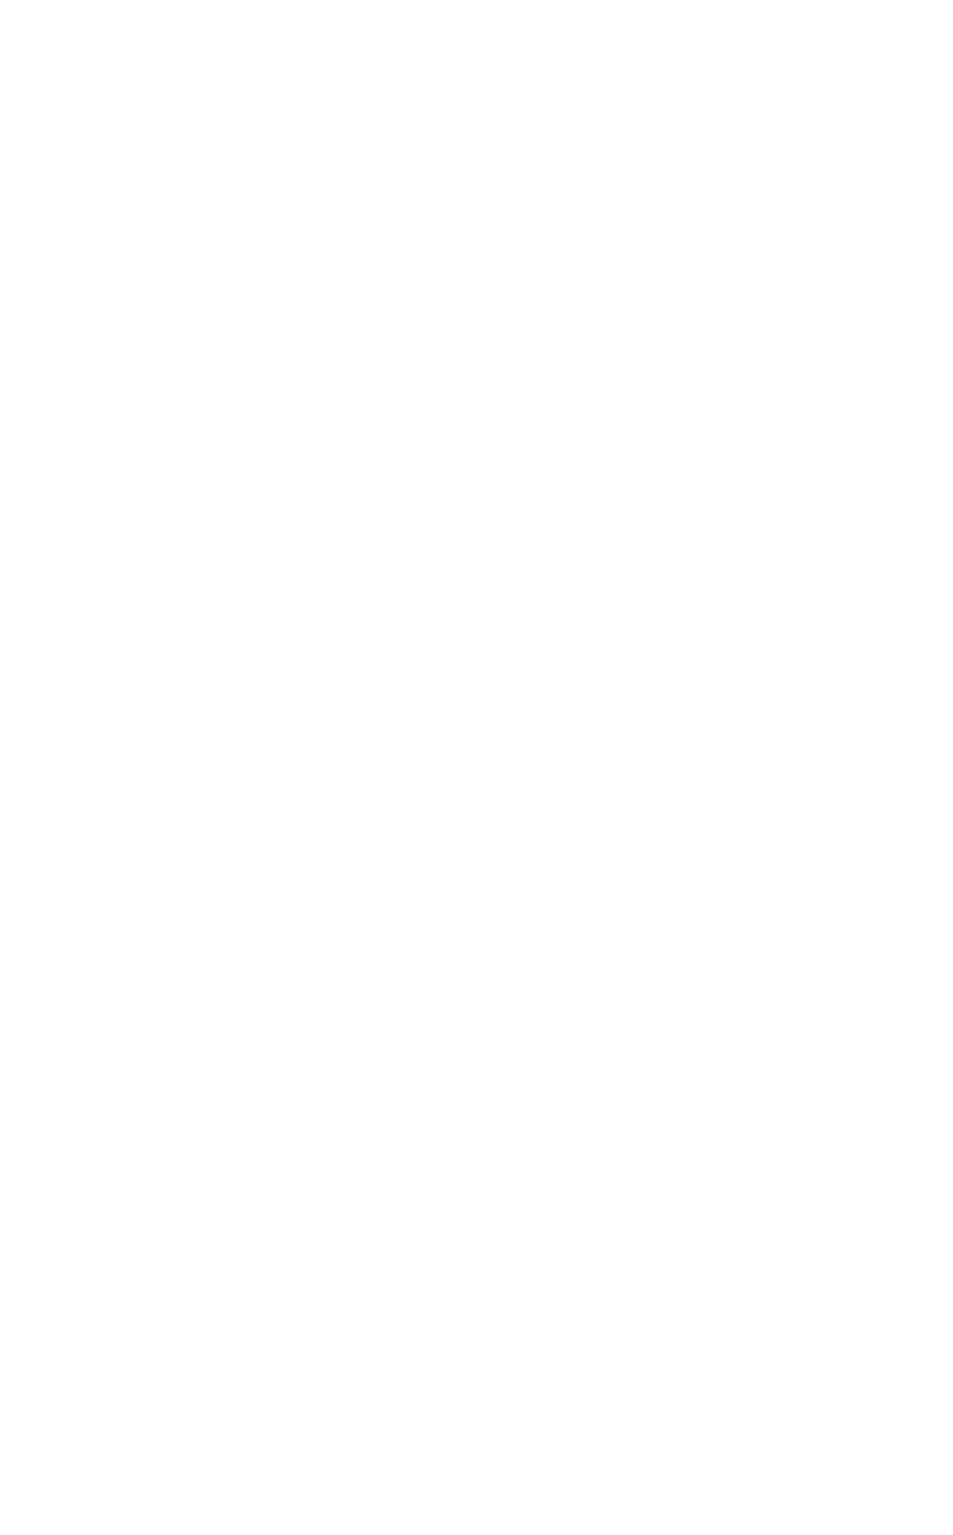 Arabian International Healthcare Holding logo for dark backgrounds (transparent PNG)